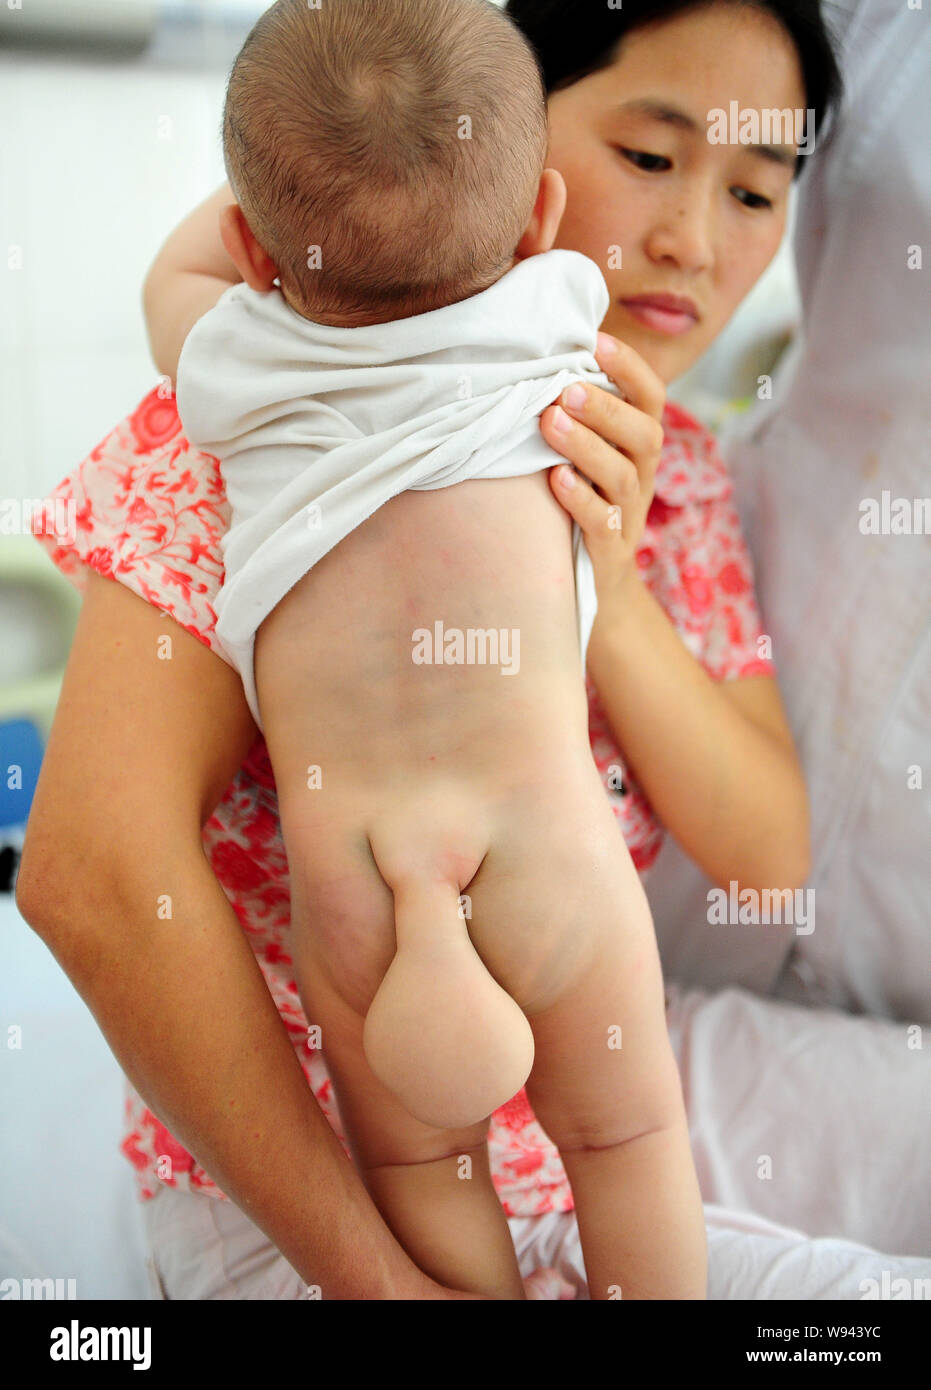 Die sieben Monate alte Kind, hat einen kleinen Schwanz - wie Tumor am Ende seiner Wirbelsäule durch seine Mutter in einem Krankenhaus in Guangzhou gehalten wird, südost China Stockfoto